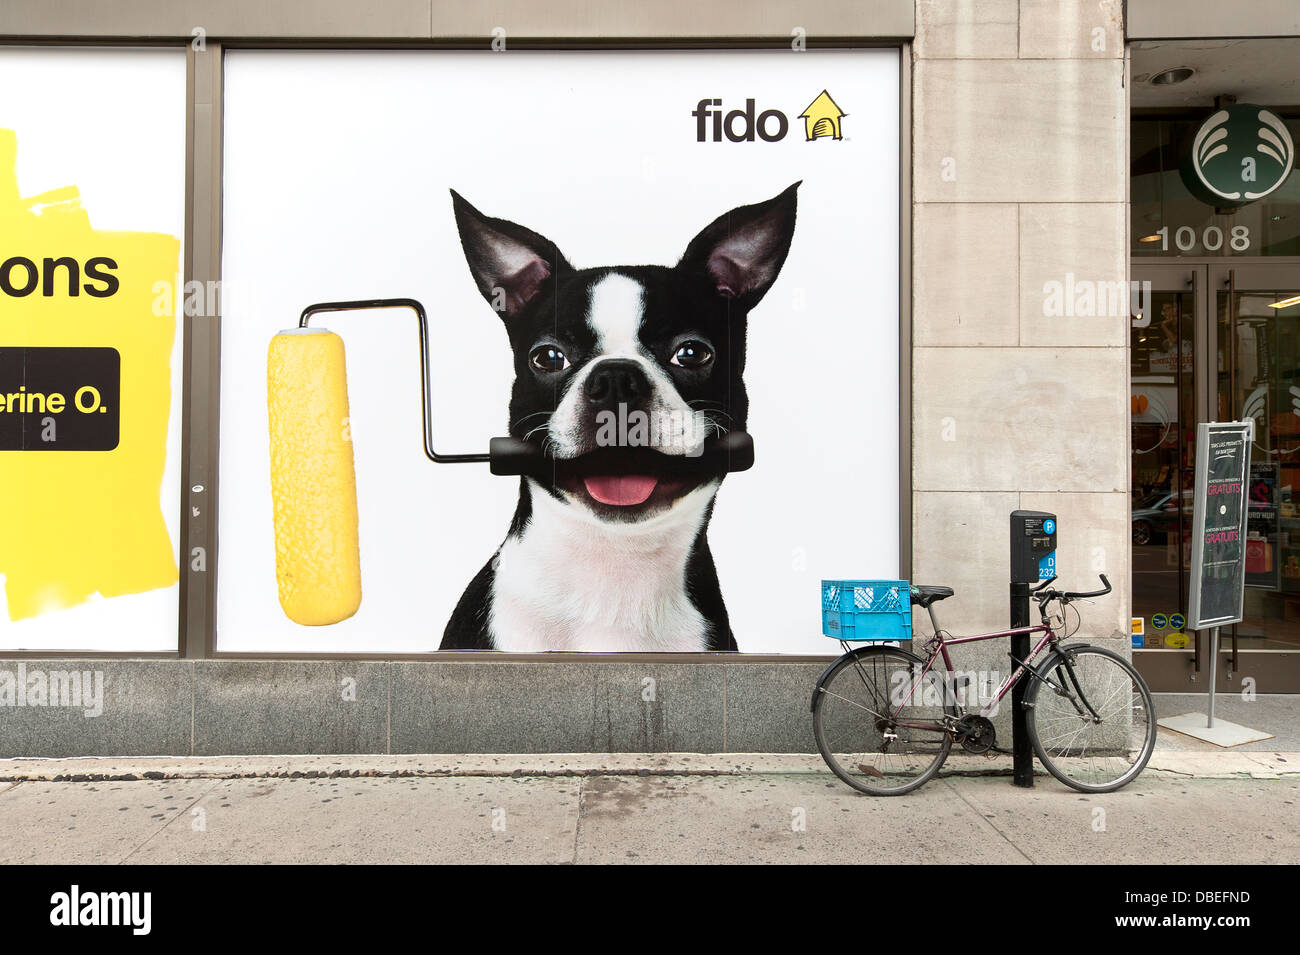 Publicité pour les téléphones portables Fido dans une vitrine de magasin. Banque D'Images